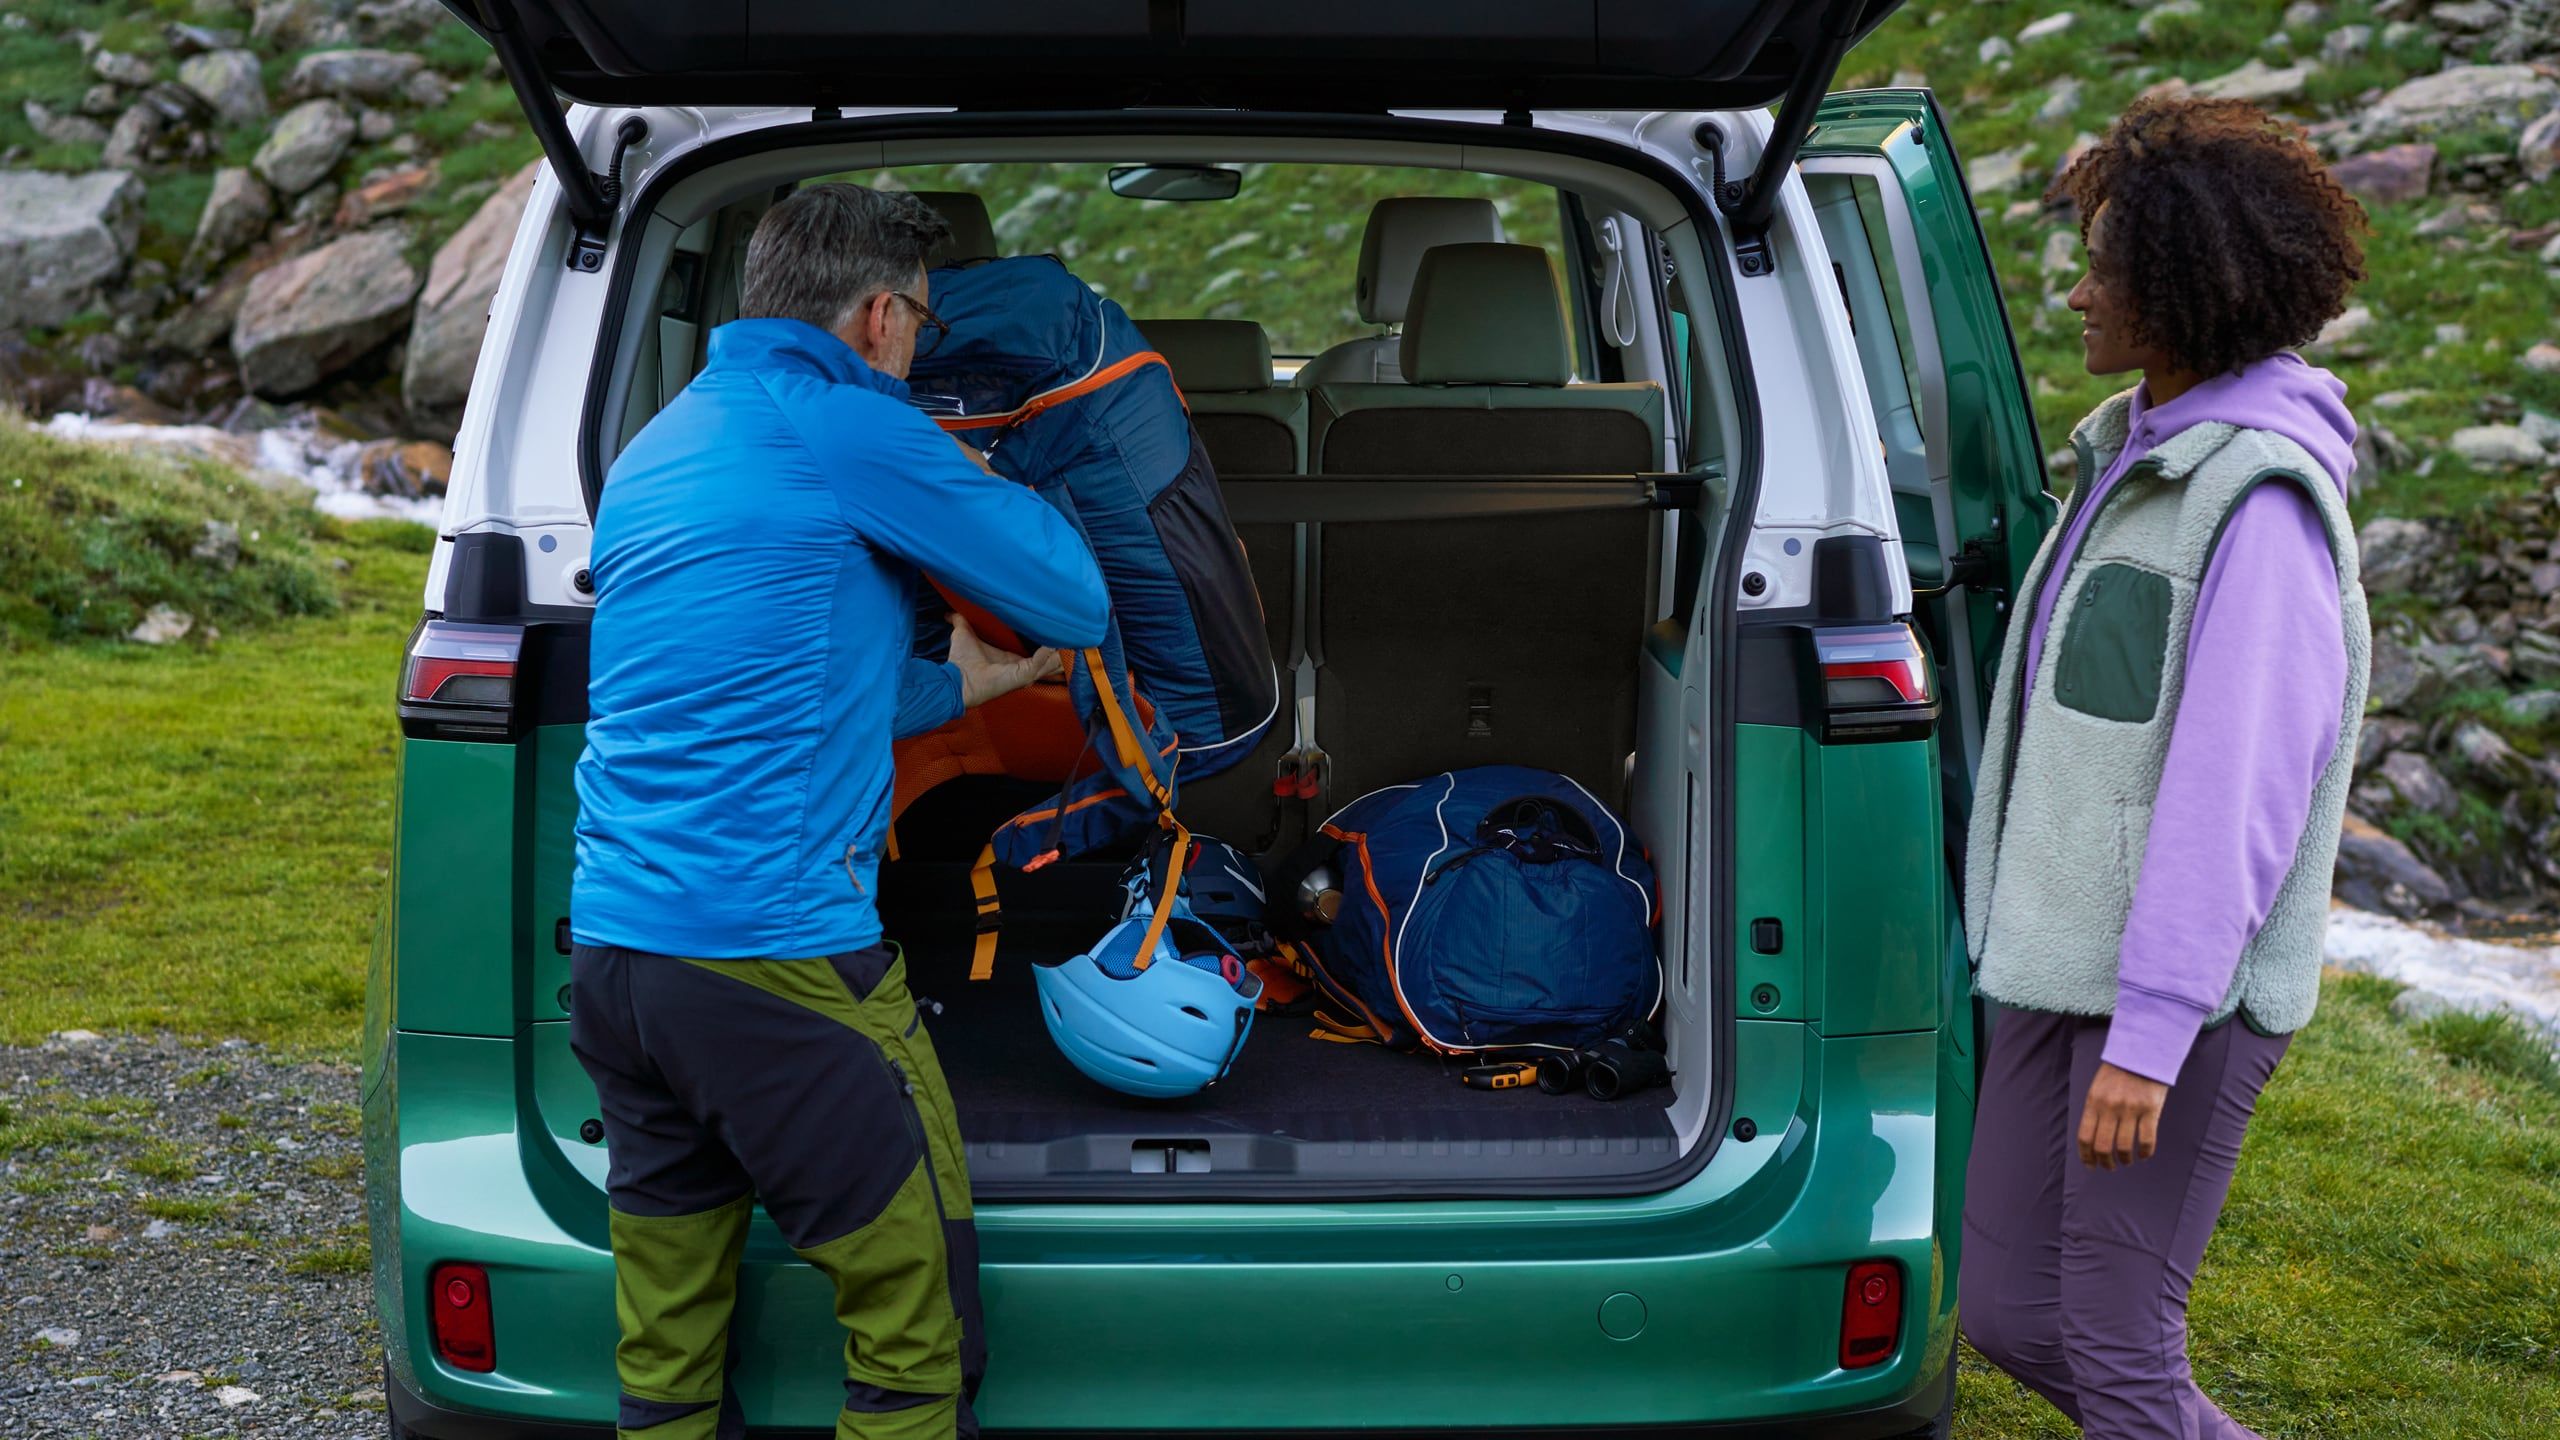 Offene Heckklappe des VW ID. Buzz und zwei Personen entnehmen Kletterausrüstung